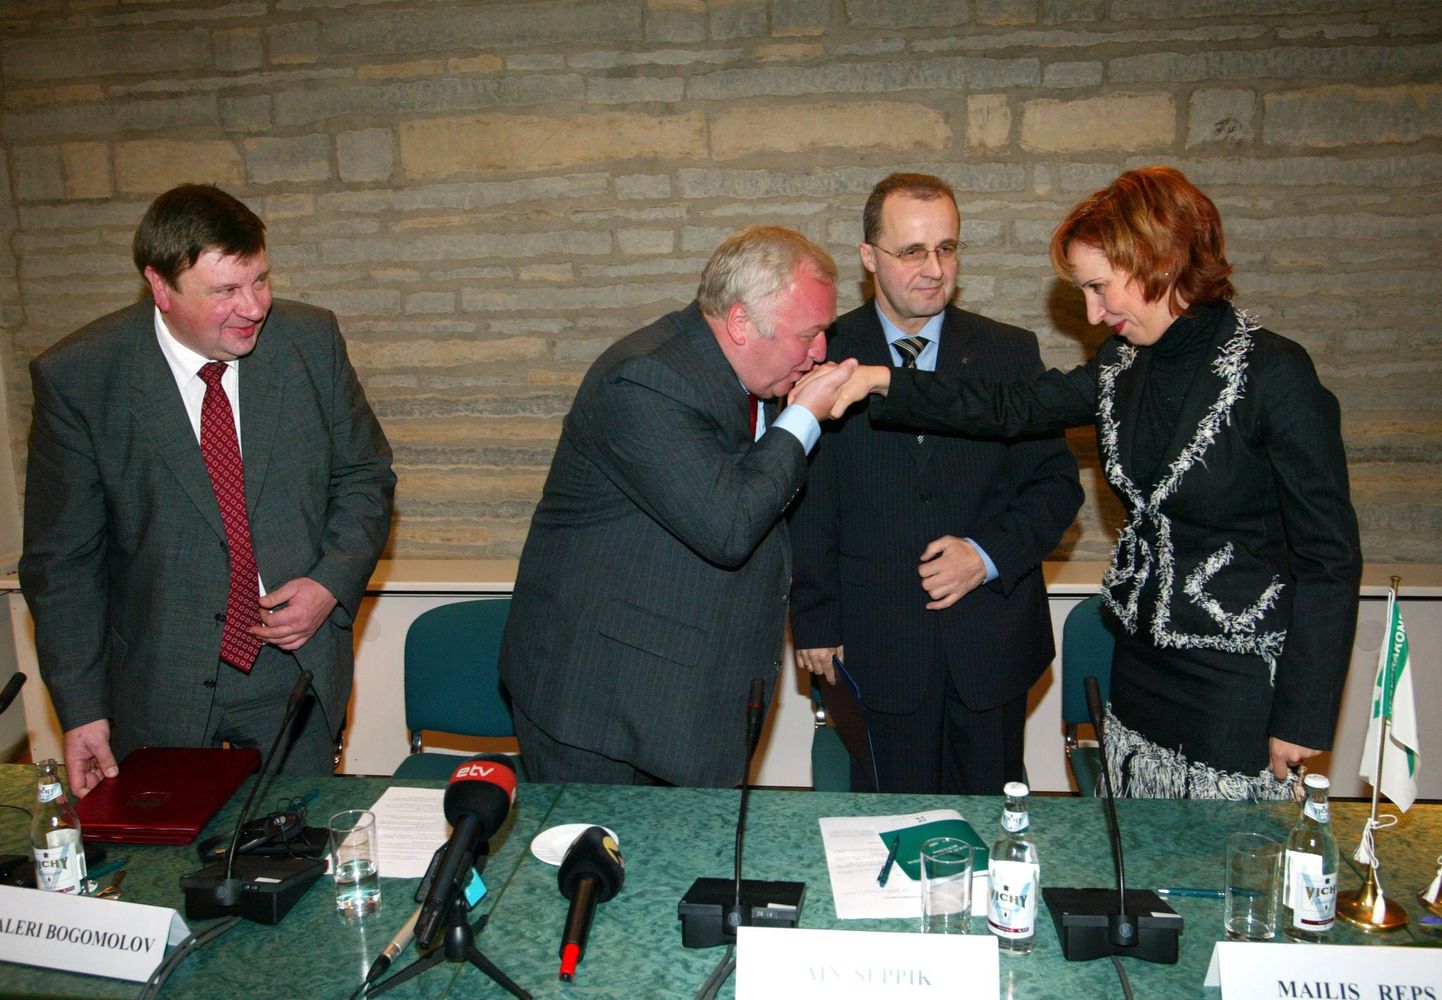 11 декабря 2004 года. Валерий Гусев (слева) и Валерий Богомолов подписывают договор от "Единой России". ЦП представляют Айн Сеппик и Майлис Репс.